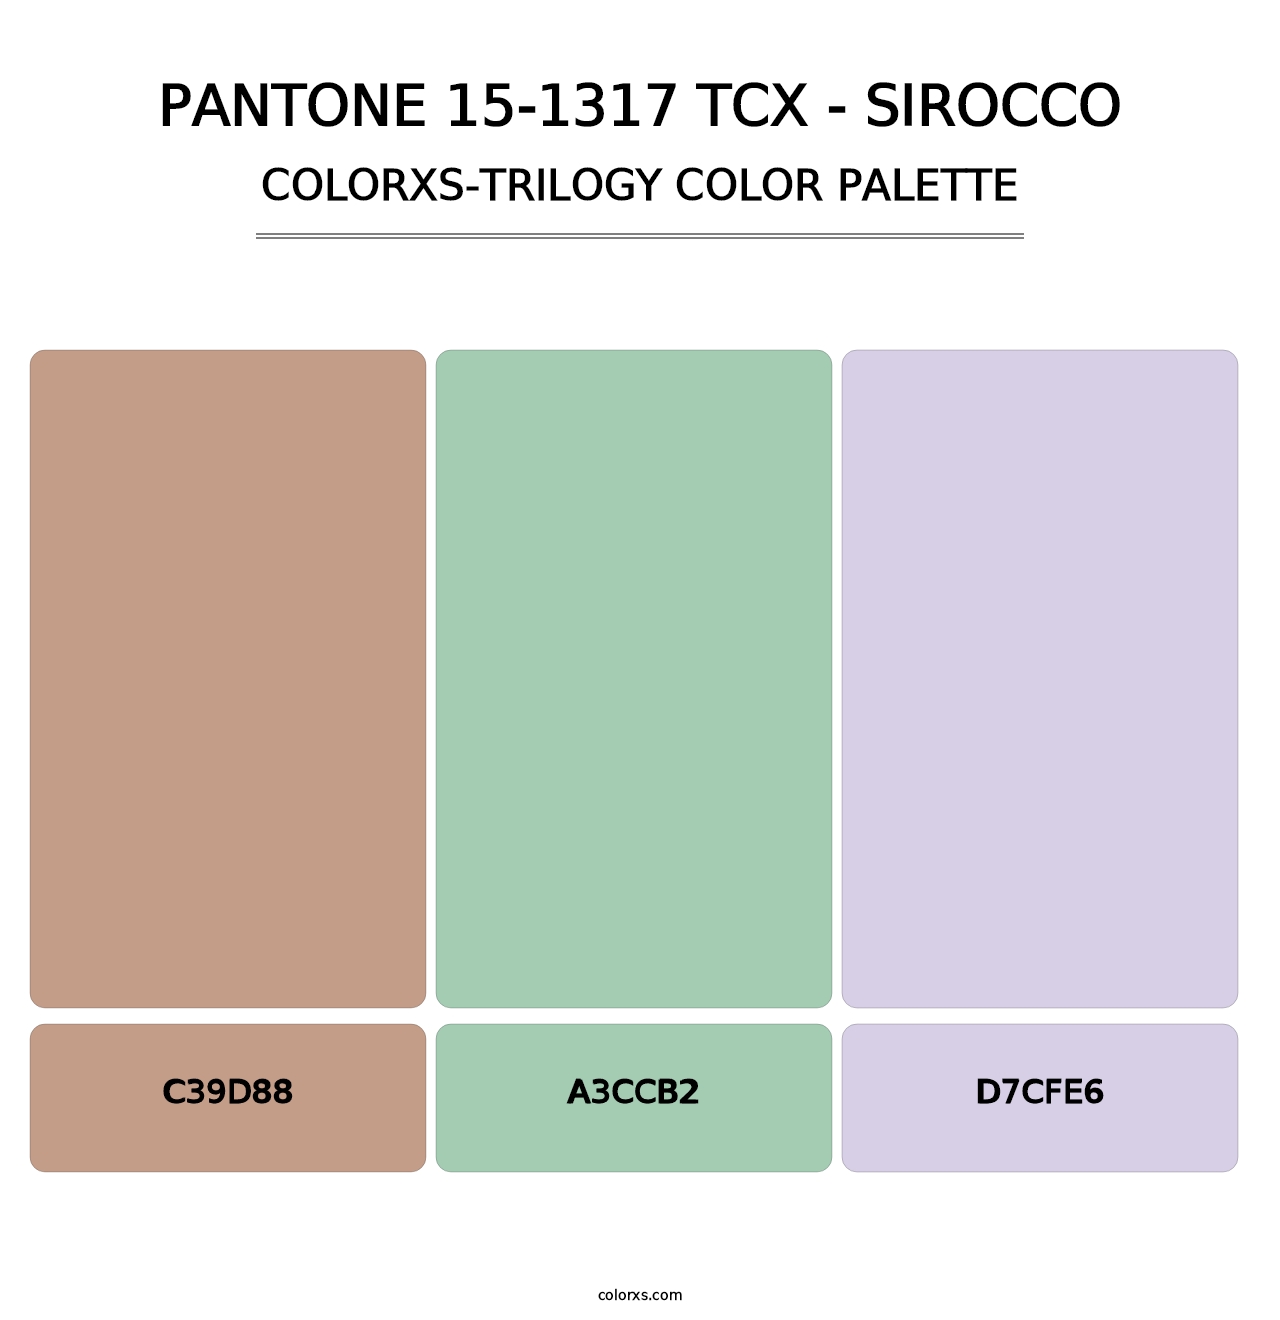 PANTONE 15-1317 TCX - Sirocco - Colorxs Trilogy Palette